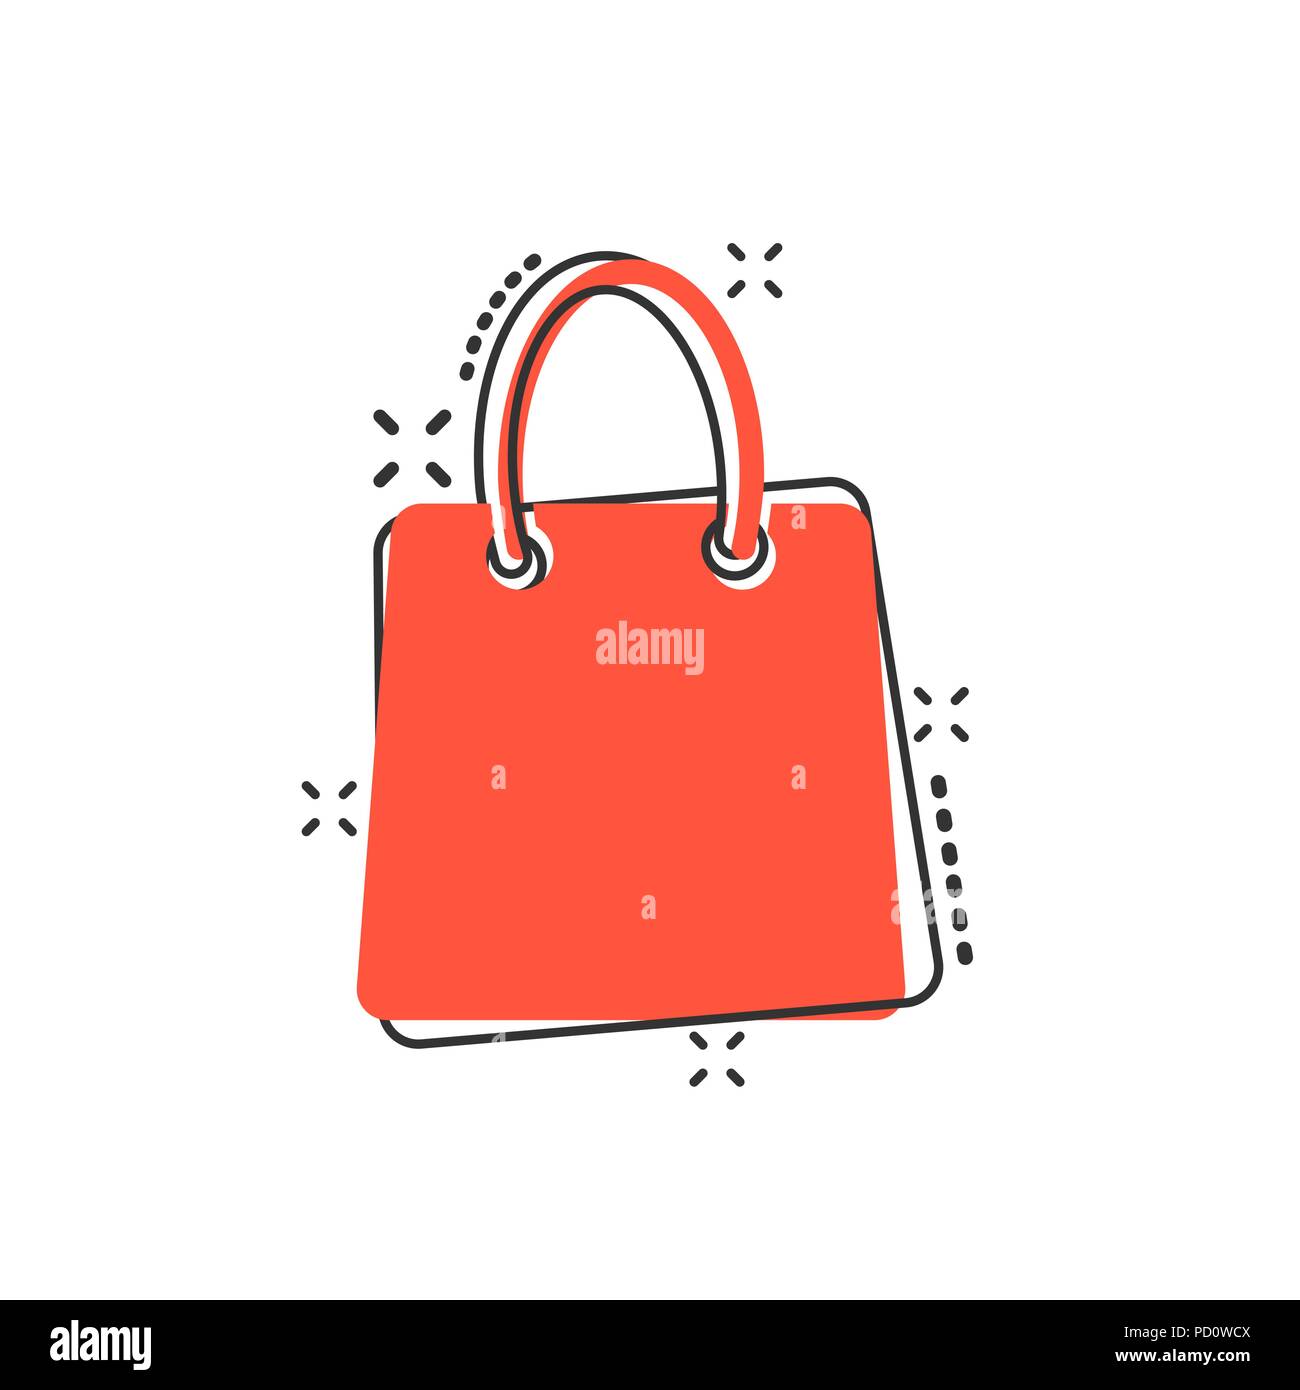 Vektor Cartoon Warenkorb Symbol Im Comic Stil Shop Verkauf Tasche Zeichen Abbildung Piktogramm Geschenk Unternehmen Splash Wirkung Konzept Stock Vektorgrafik Alamy